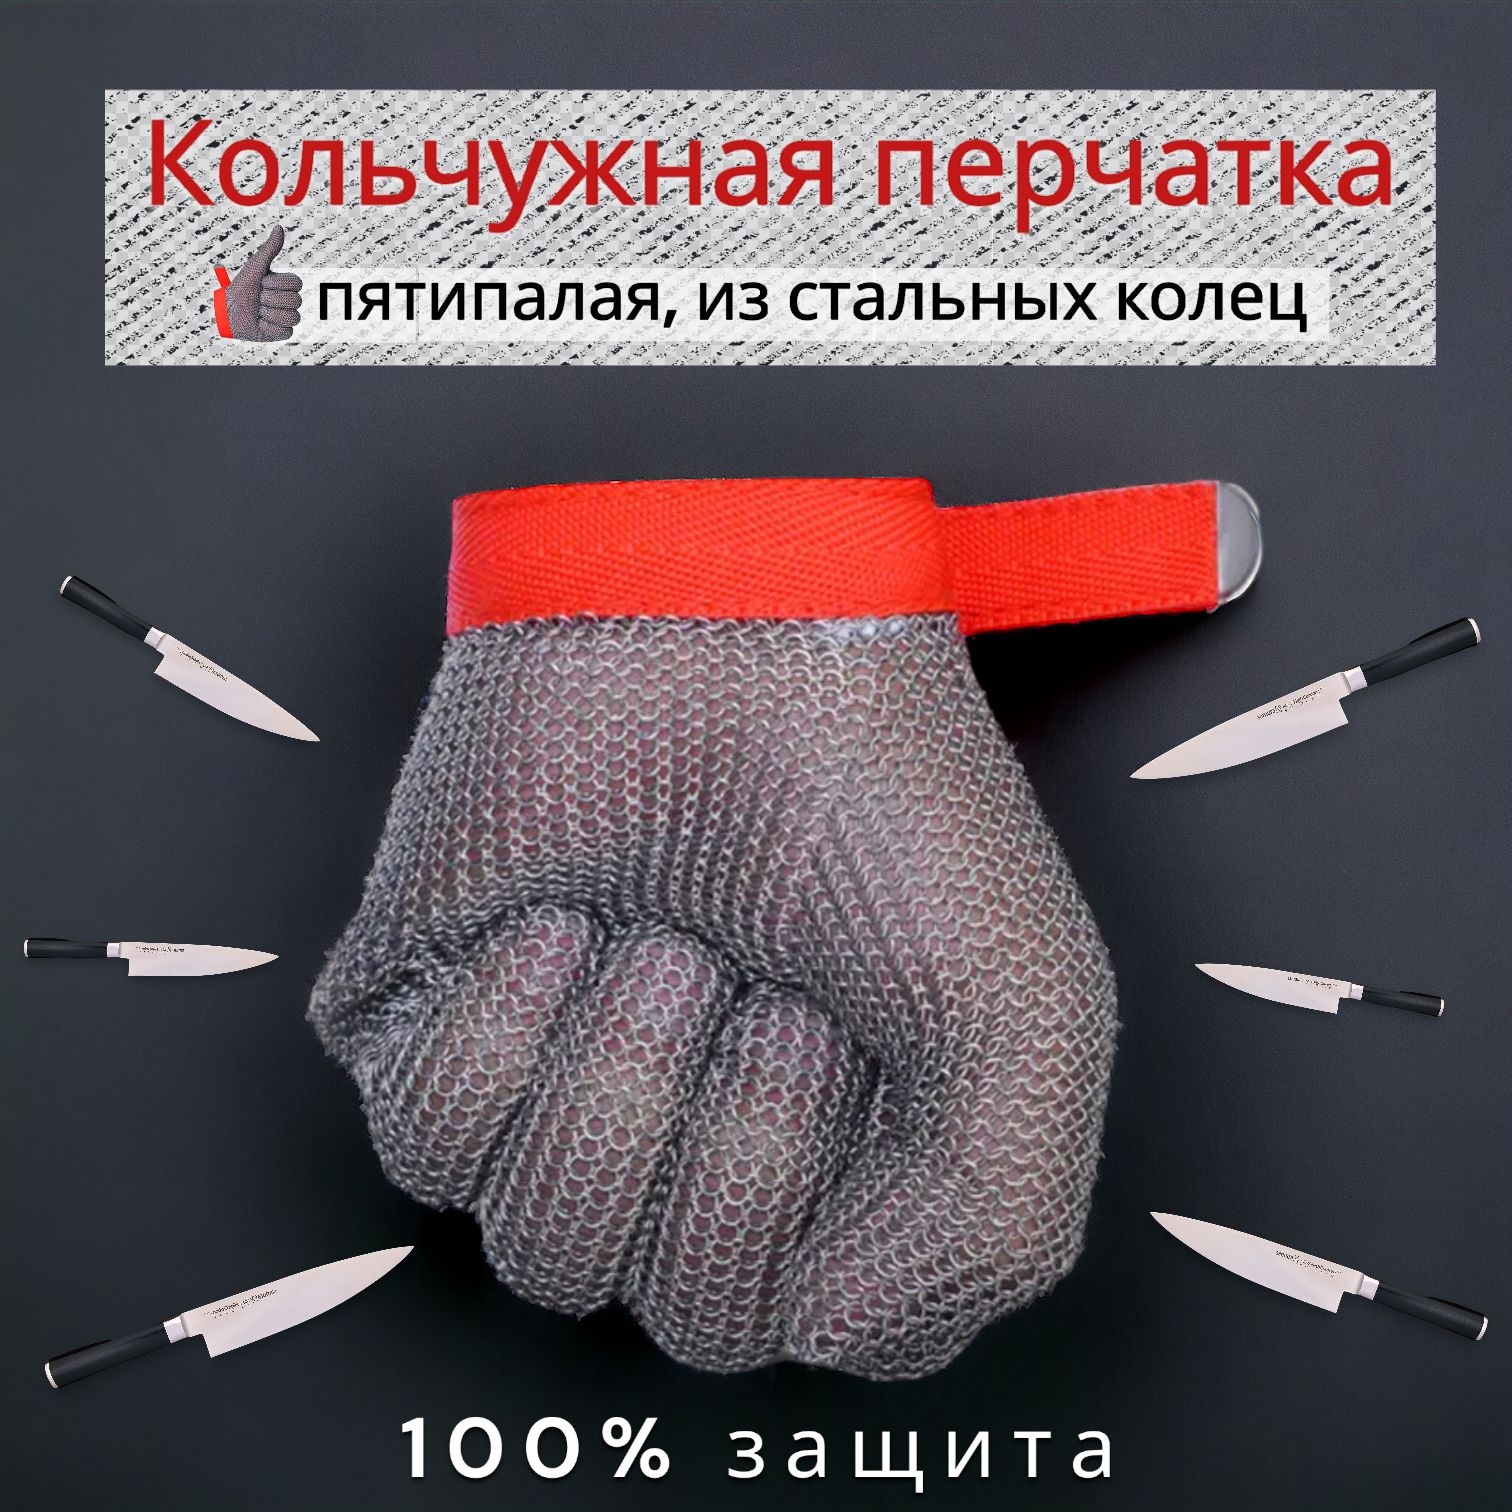 Защитная перчатка из стальных колец/ кольчужная/ для работы с острыми приборами перчатка титана